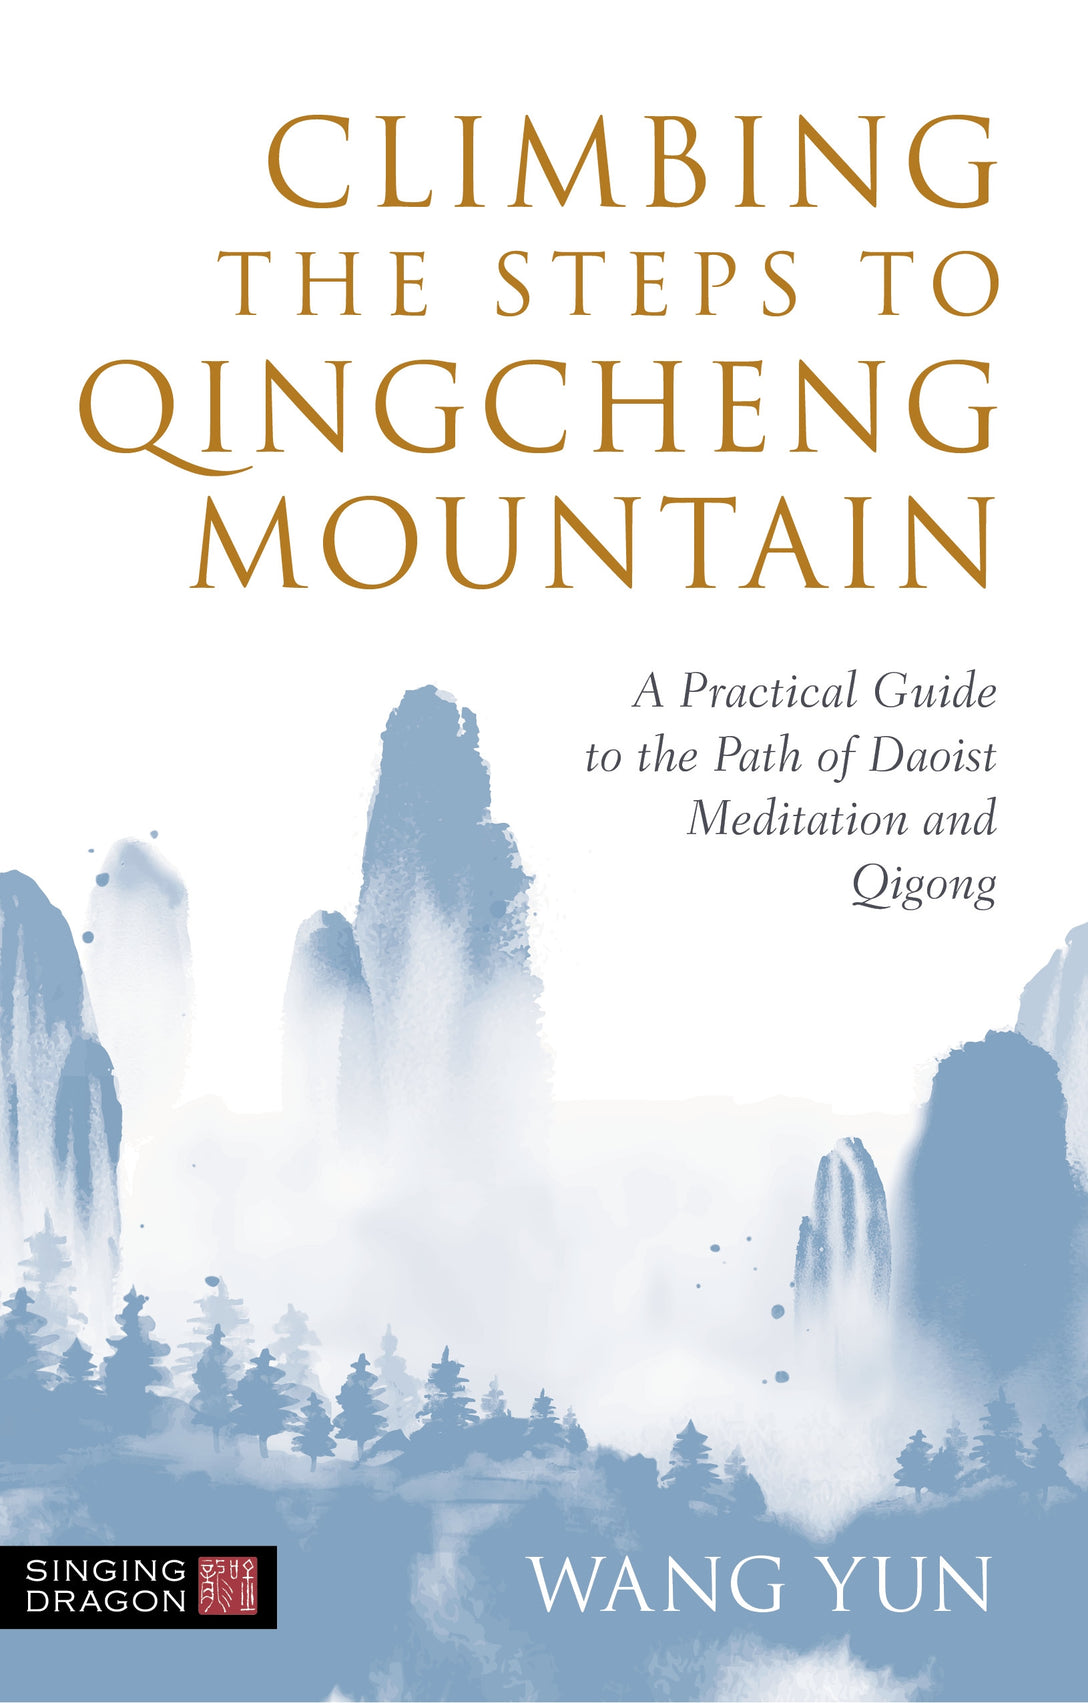 Climbing the Steps to Qingcheng Mountain by Wang Yun